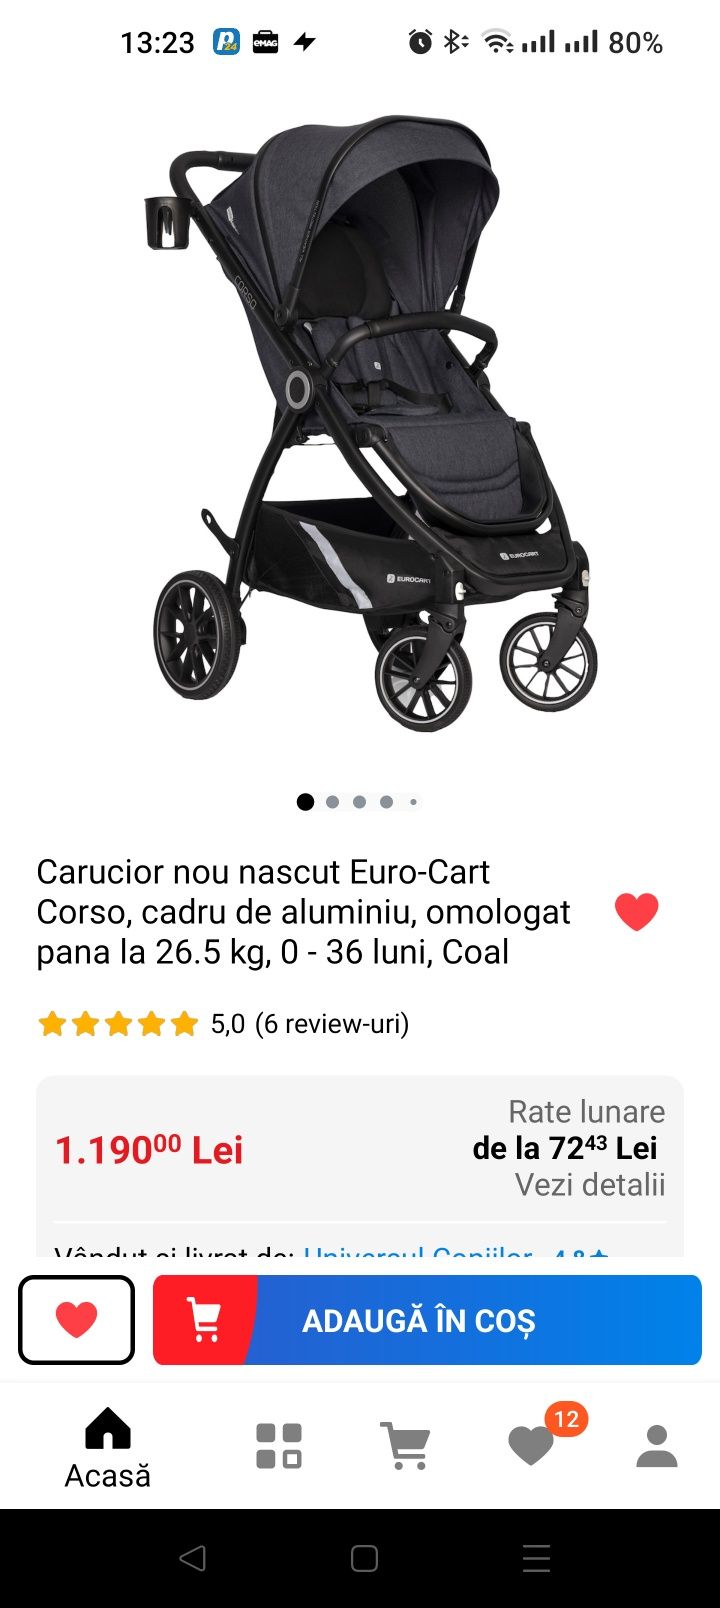 Vând Carucior Euro-Cart Corso, cadru de aluminiu,max 26.5kg